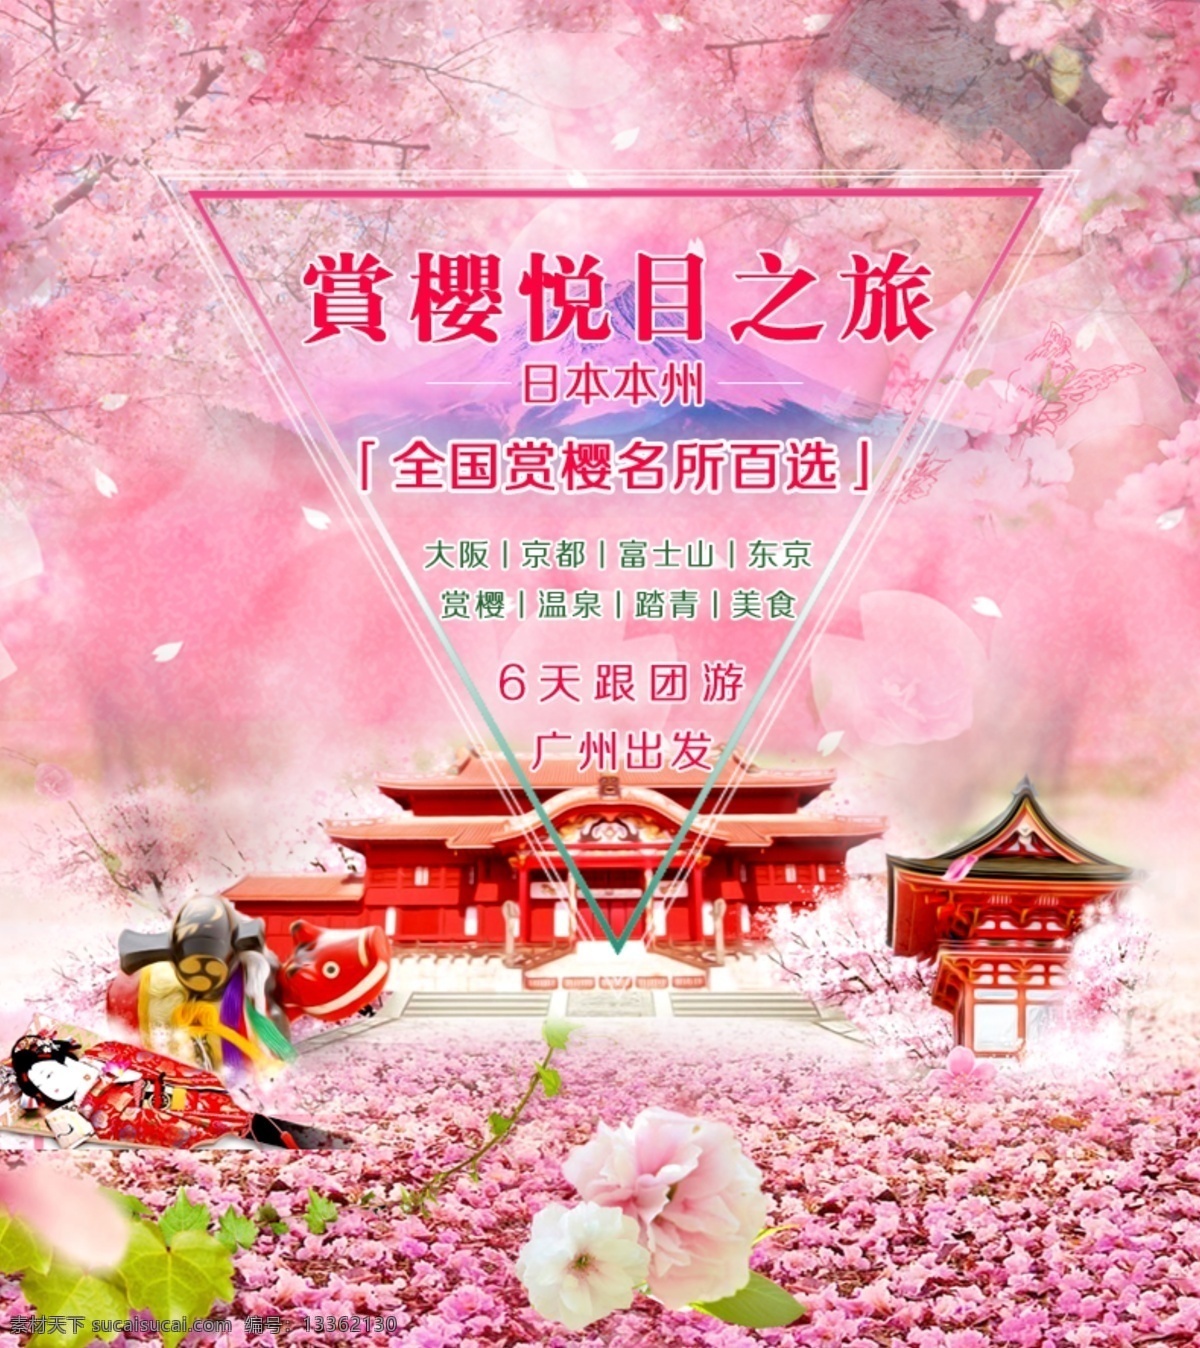 赏 樱 悦目 之旅 海报 旅行社 宣传海报 樱花 旅游海报 宣传海报设计 粉色